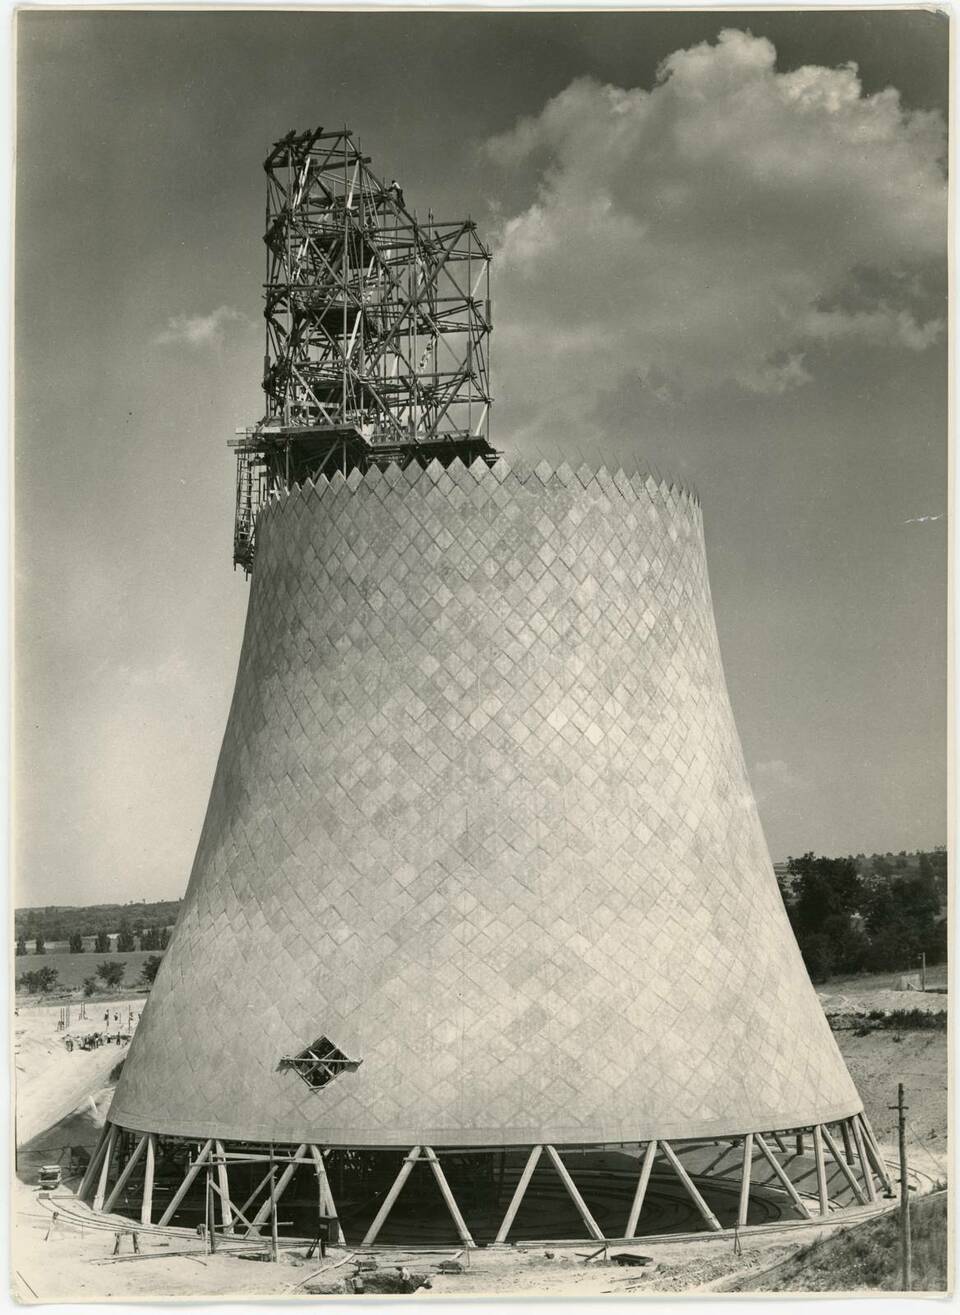 Az ajkai hőerőmű forgáshiberboloid alakú hűtőtornyának kivitelezése (1948). Fotó Wolf Johanna hagyatékában, Vitányi Pál jóvoltából.
